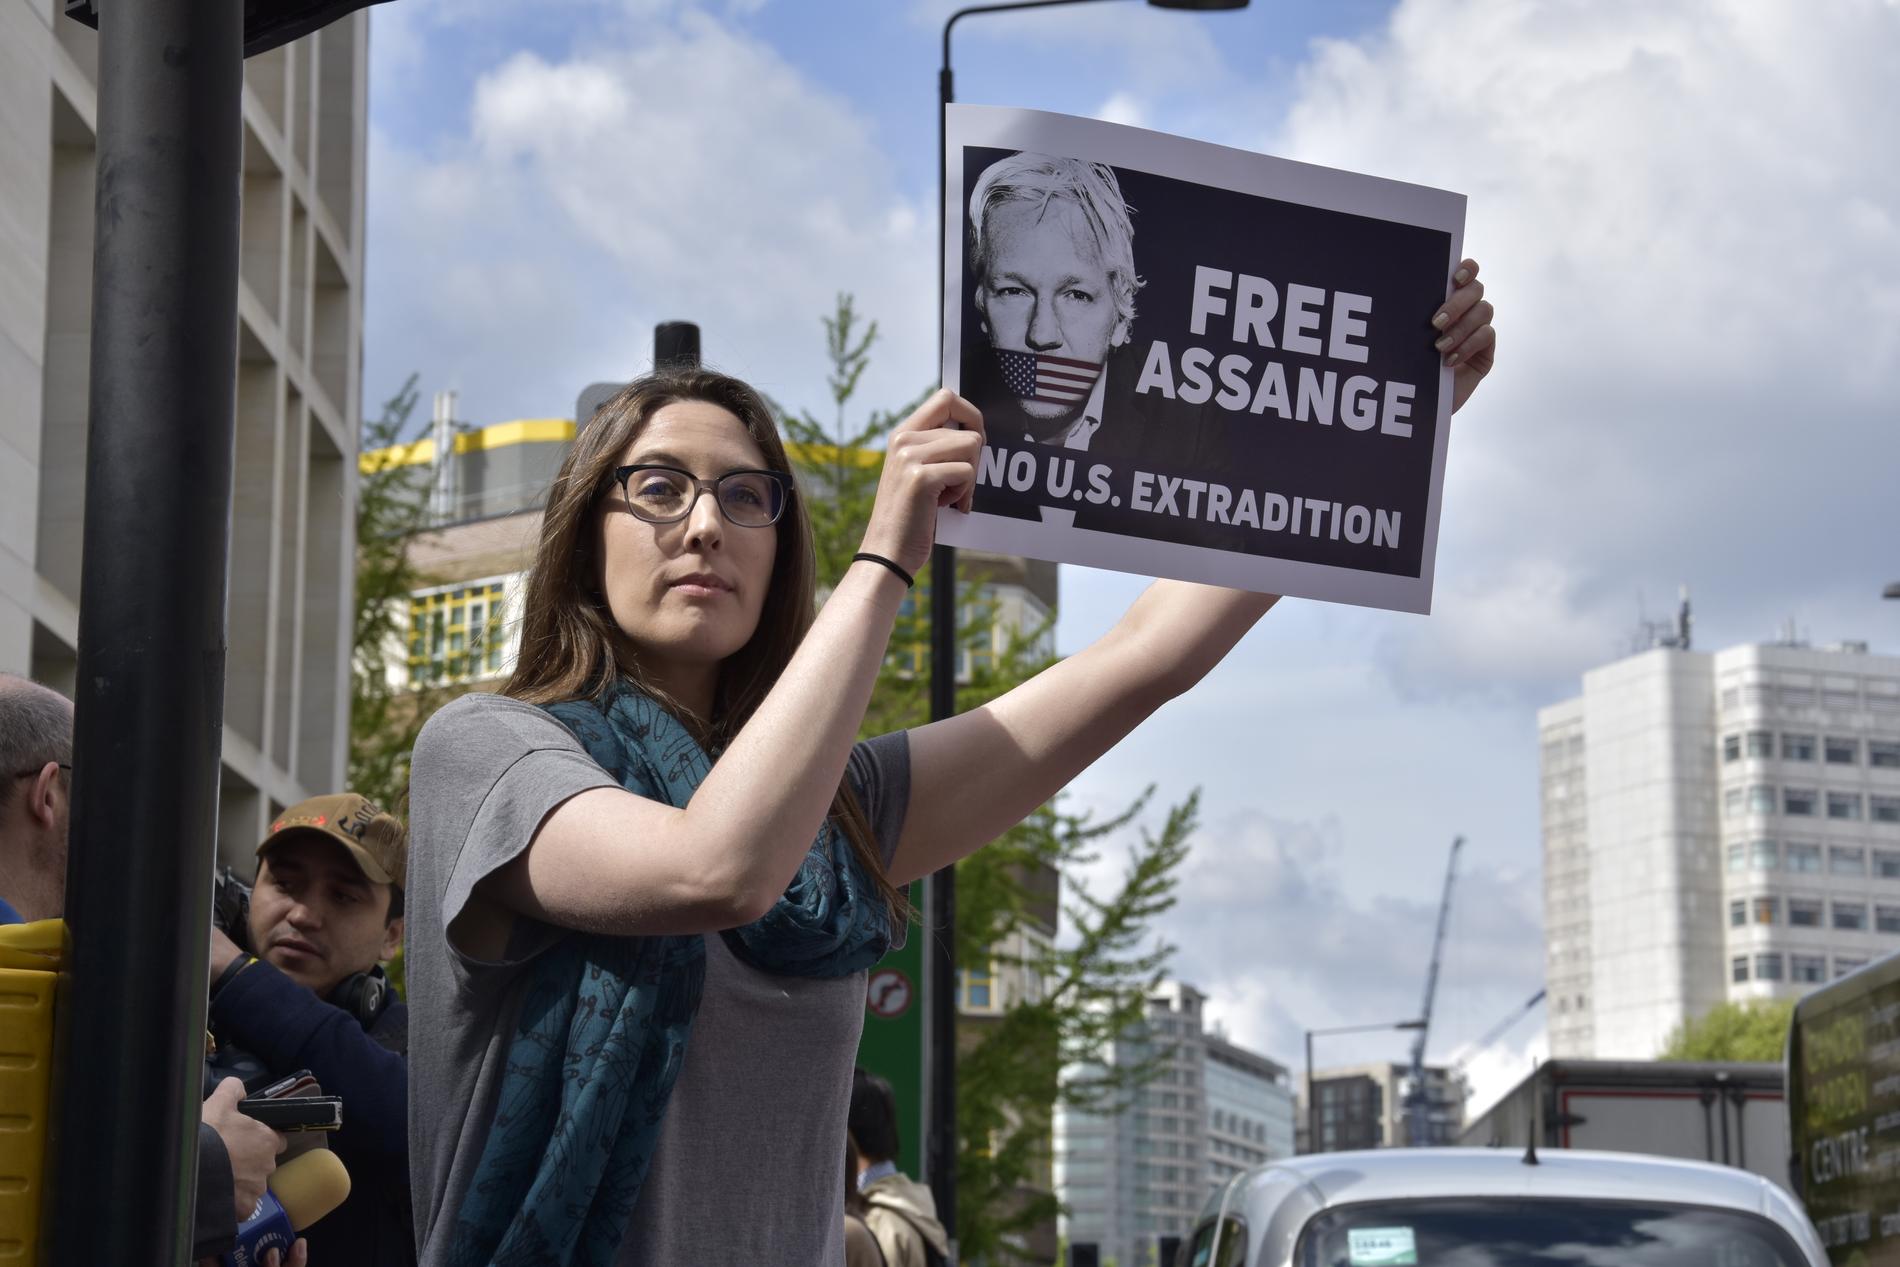 Rachel från USA har åkt över Atlanten för att visa sitt stöd för Julian Assange. Hon är orolig över vad konsekvenserna ska bli för yttrandefriheten om Assange utlämnas till USA. Många demonstranter finns på plats utanför den domstol i London där processen kring Julian Assange pågår.